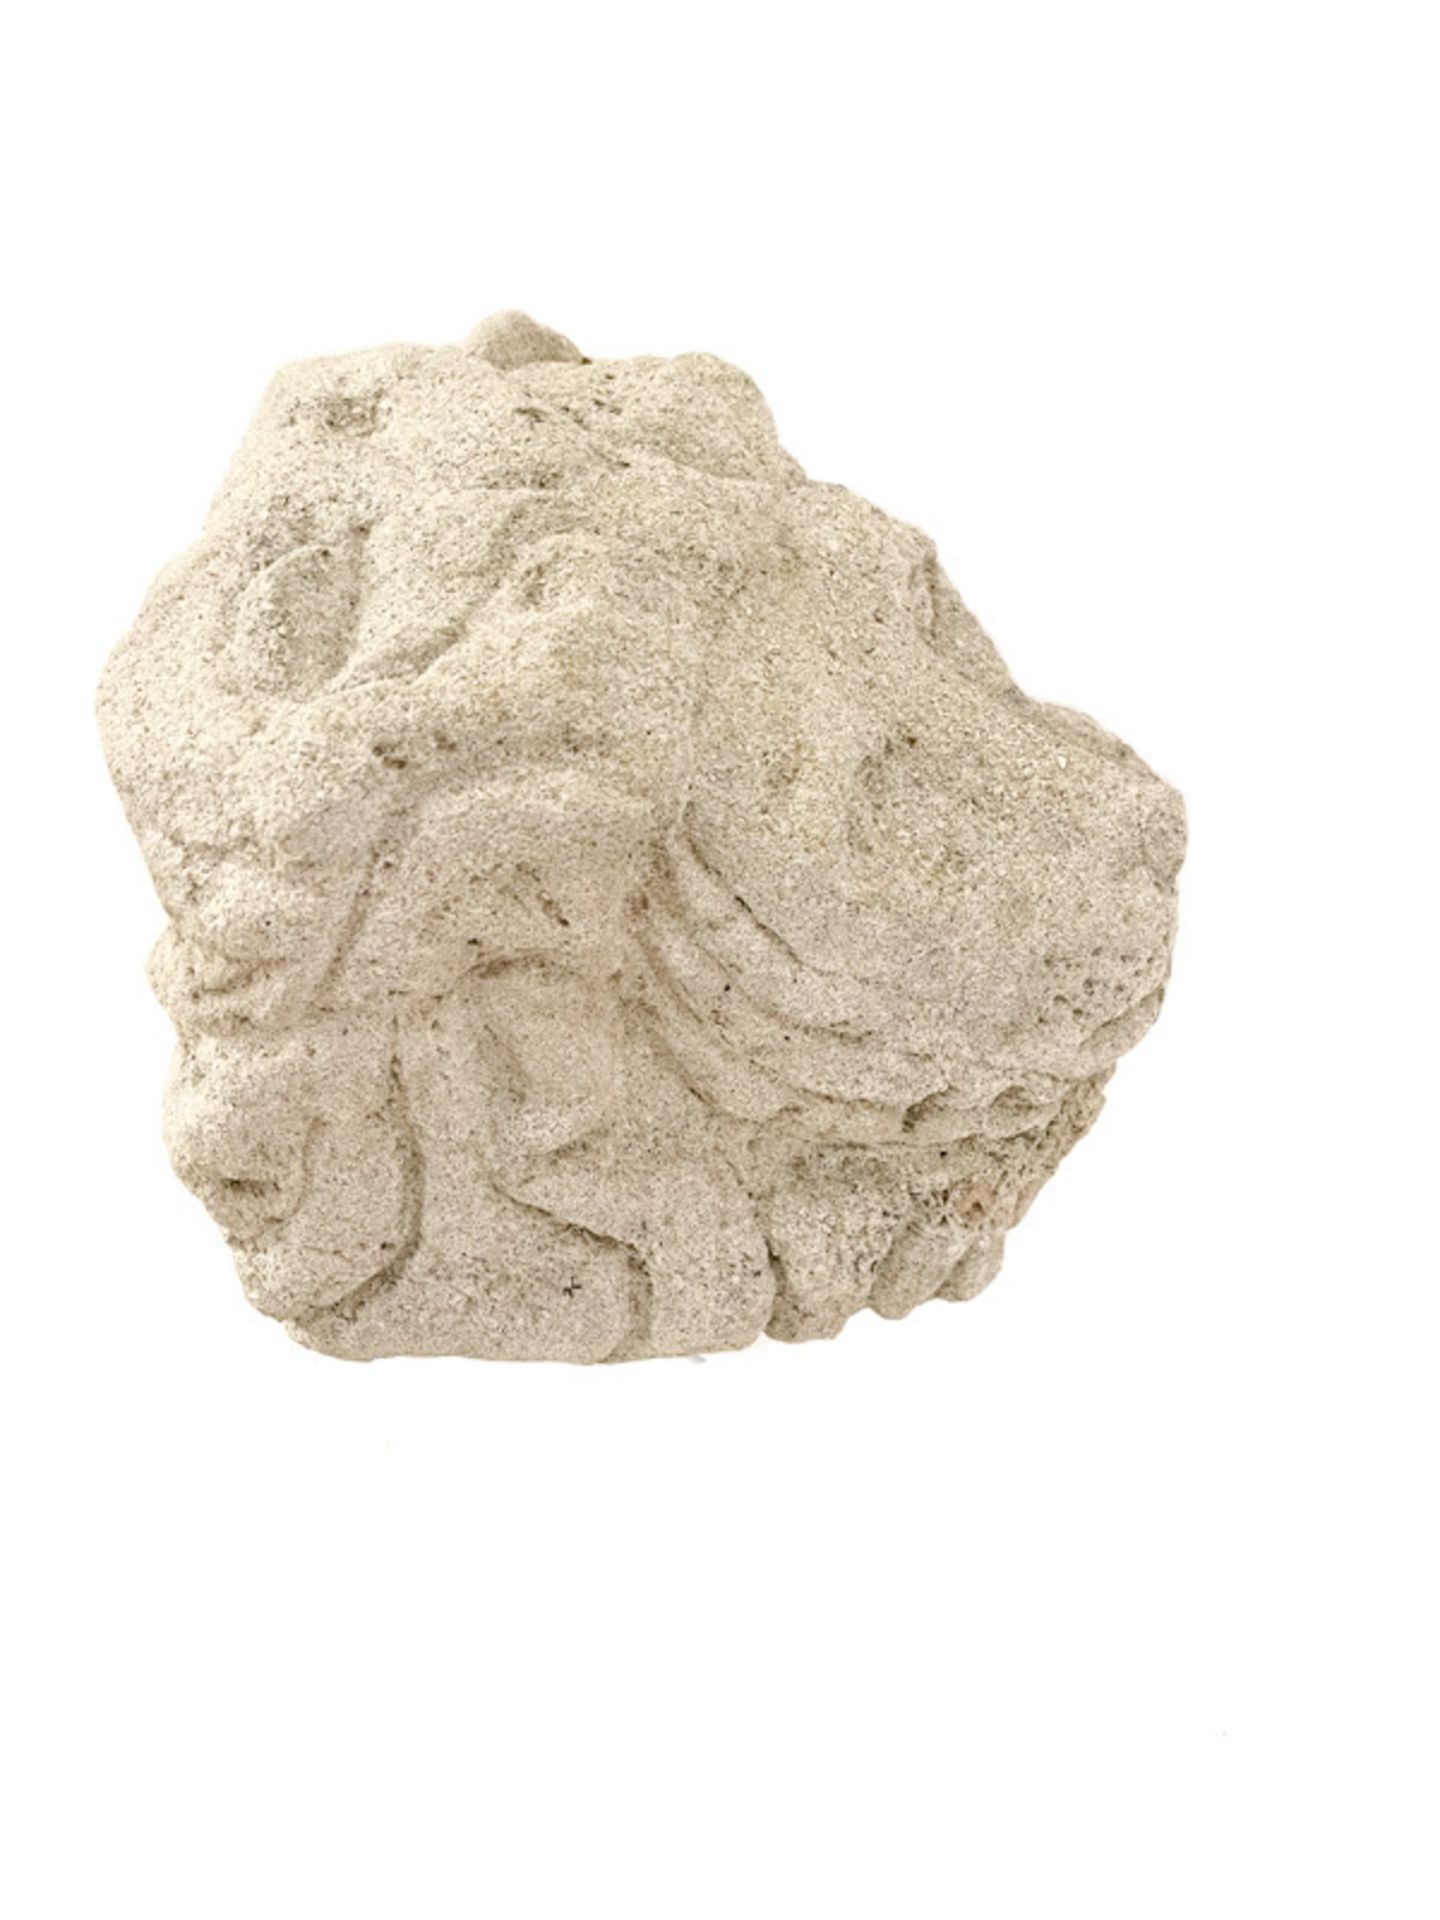 Renaissace Löwenkopf aus Sandstein - Bild 6 aus 7